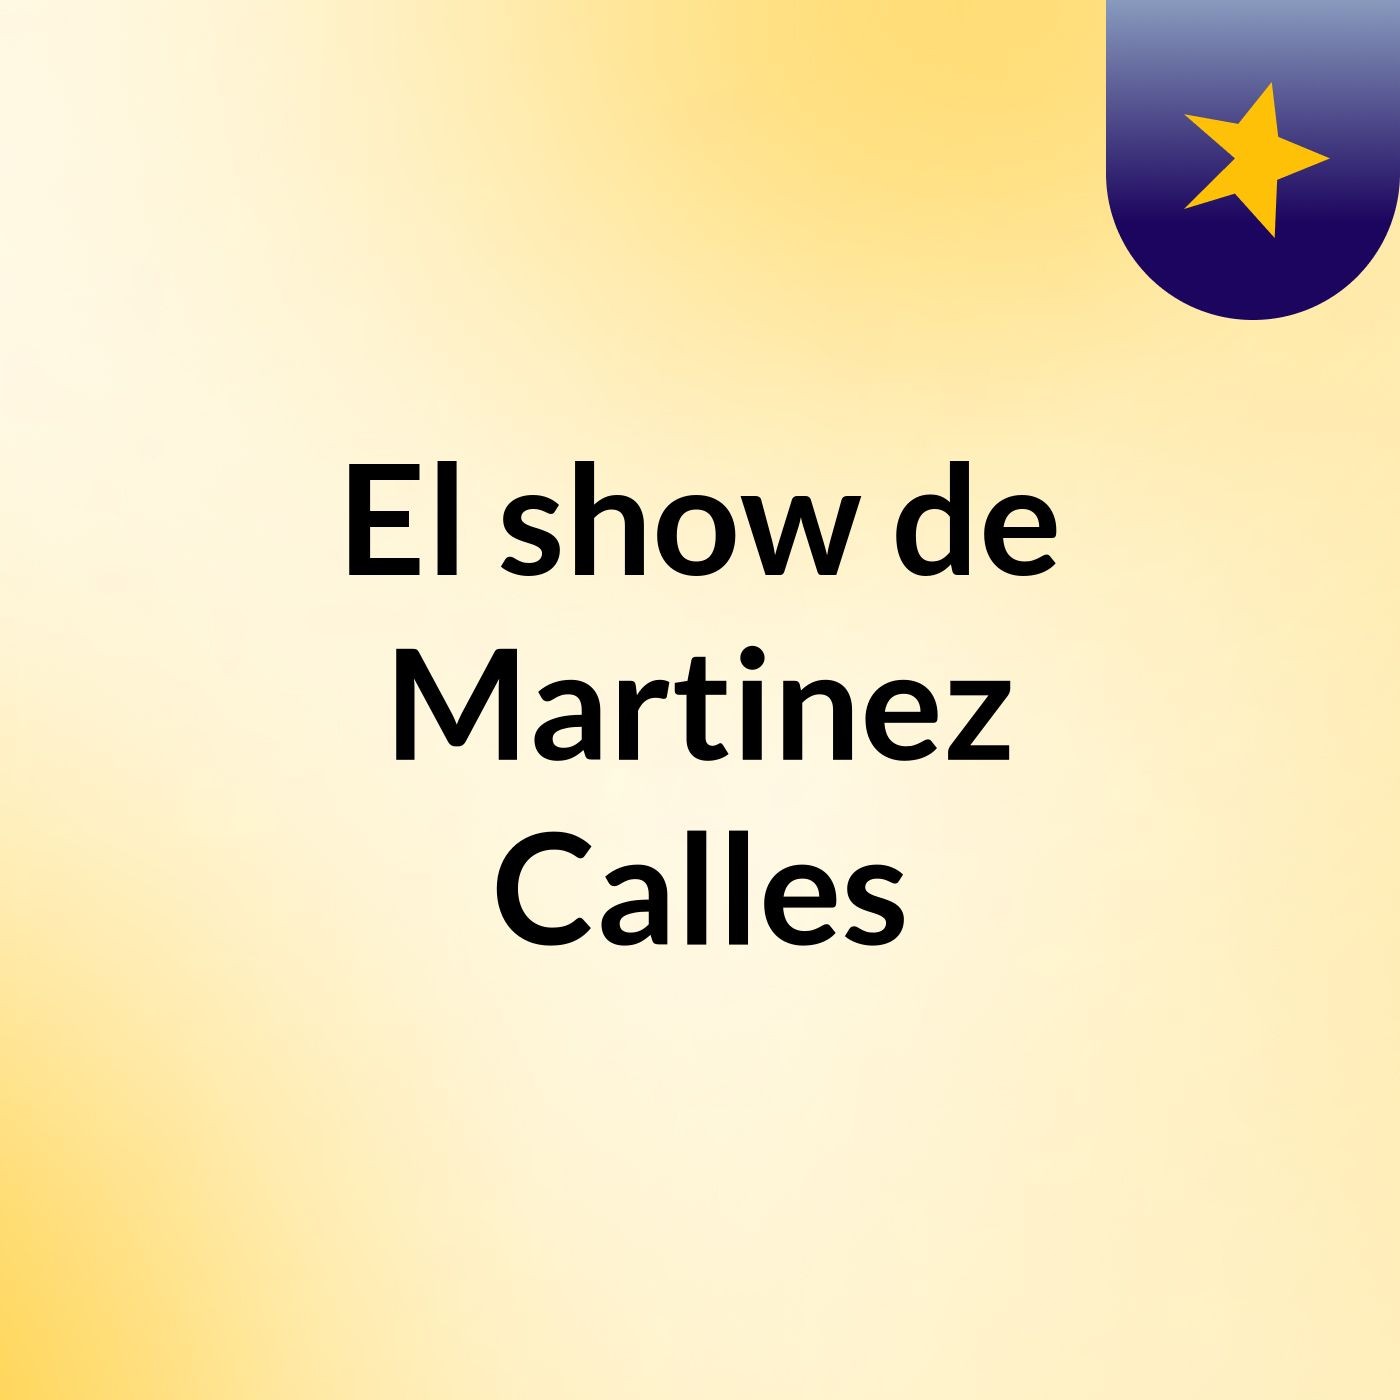 El show de Martinez Calles